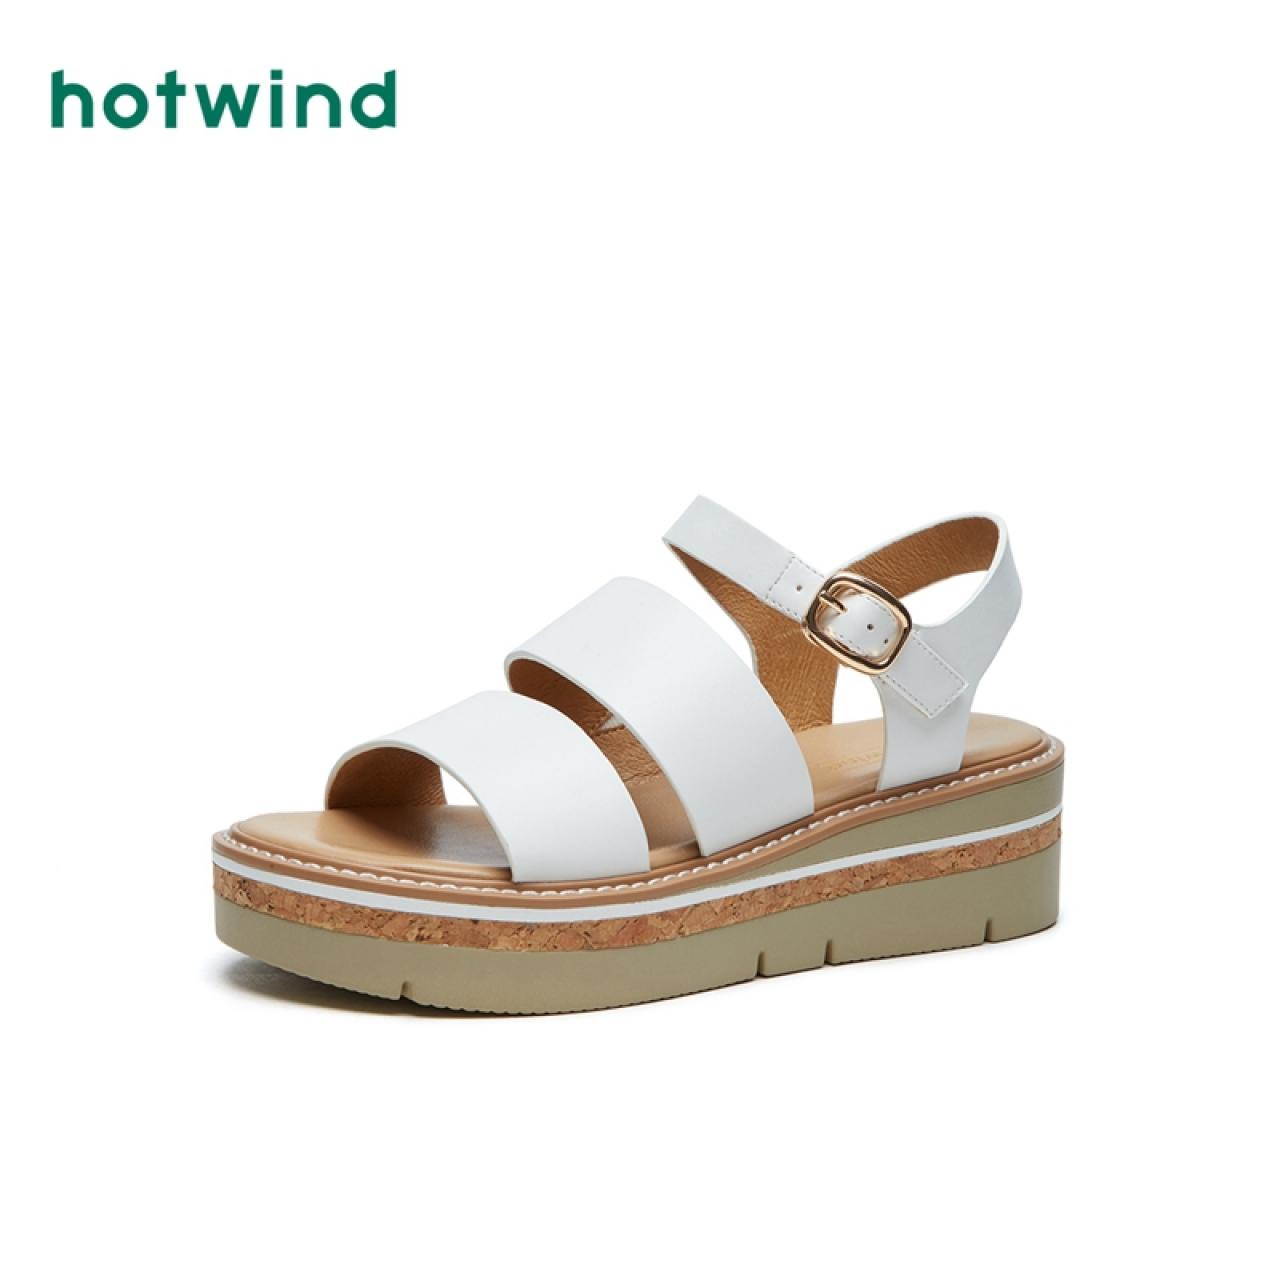 【清仓】热风坡跟女士凉鞋H59W9205,降价幅度34.4%